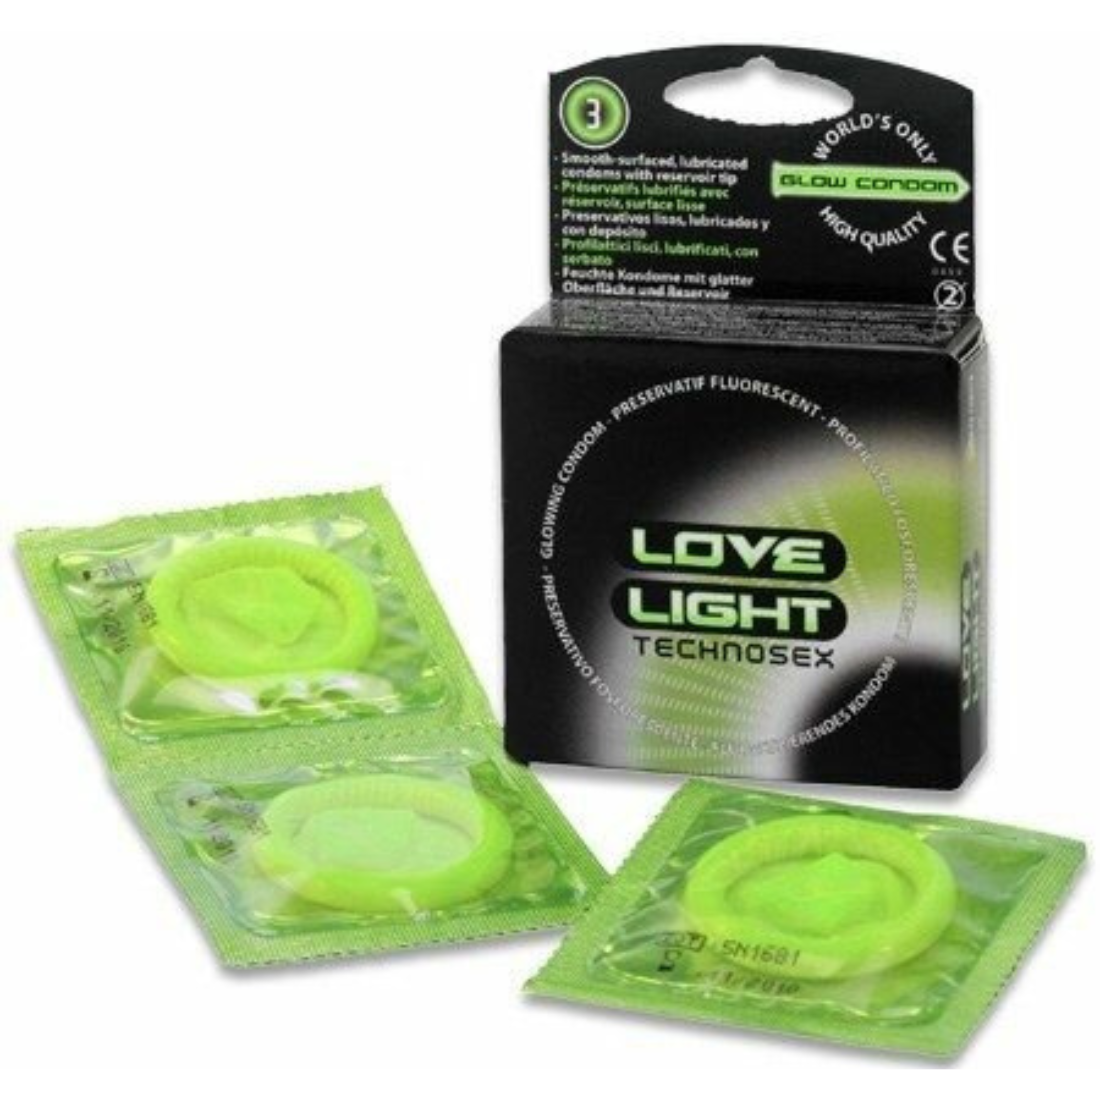 Doosje met 3 glow in the dark condooms van Sugant, te koop bij Flavourez.